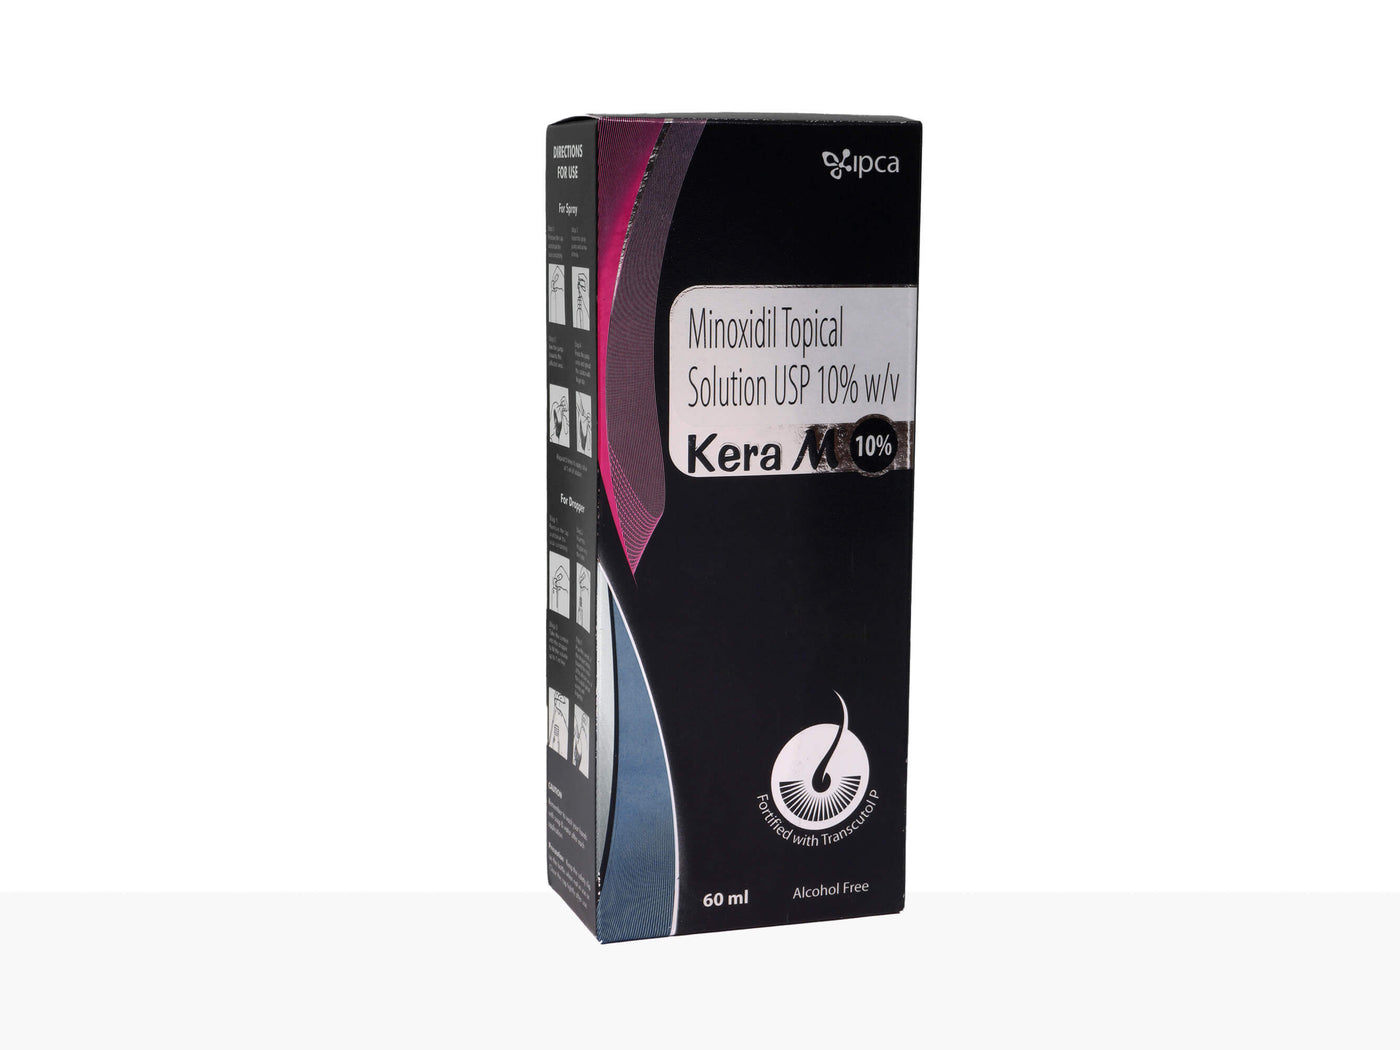 Kera-M 10% Solution - Clinikally